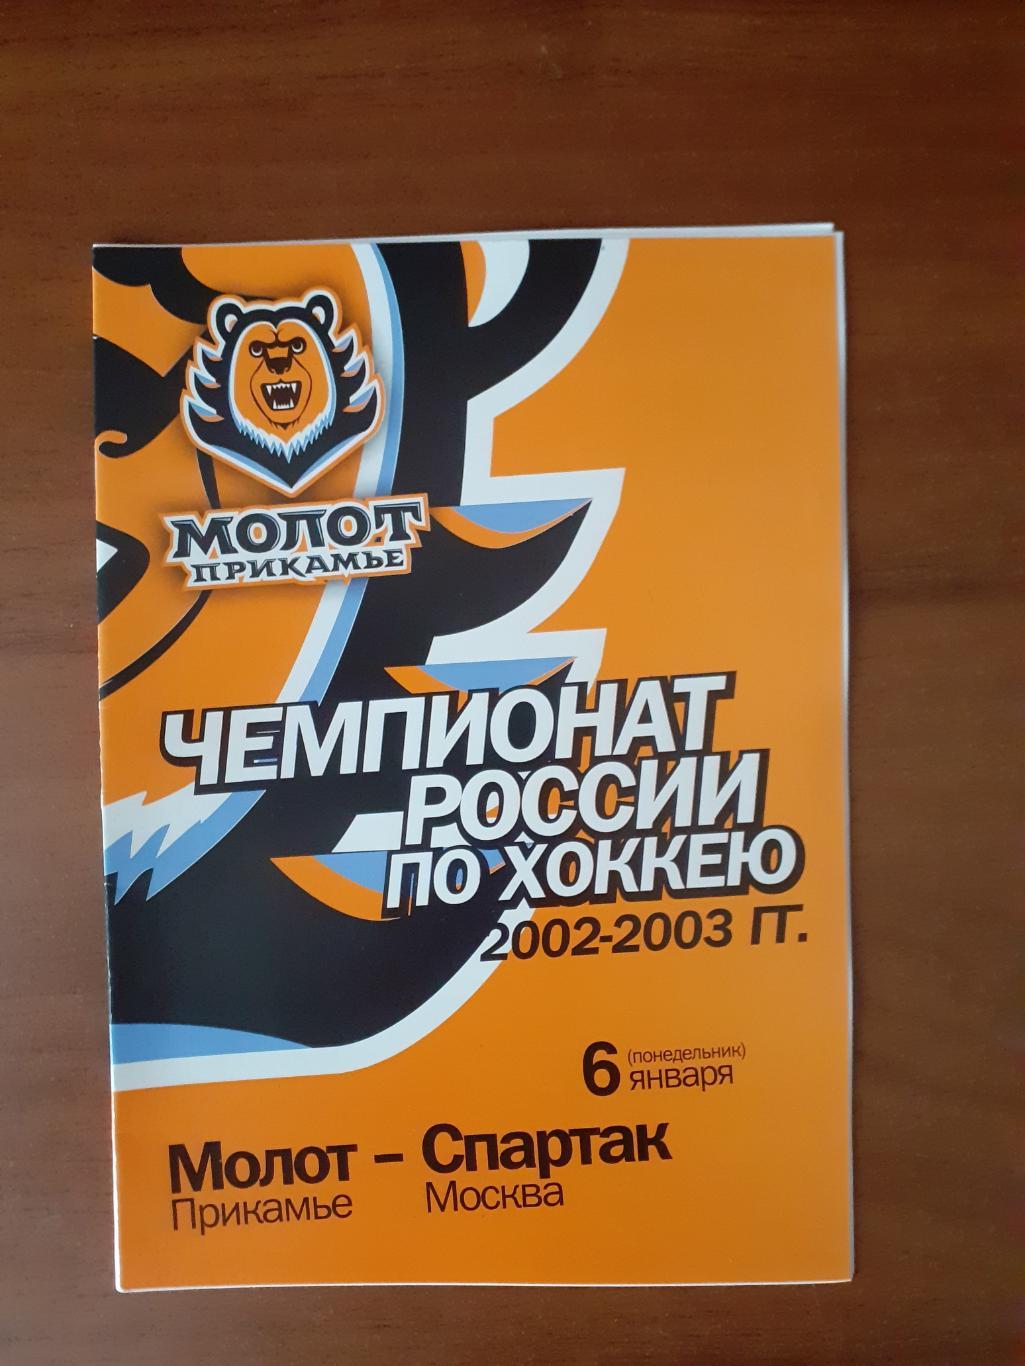 Молот-Прикамье Пермь - Спартак Москва - 6 января 2003г.г.